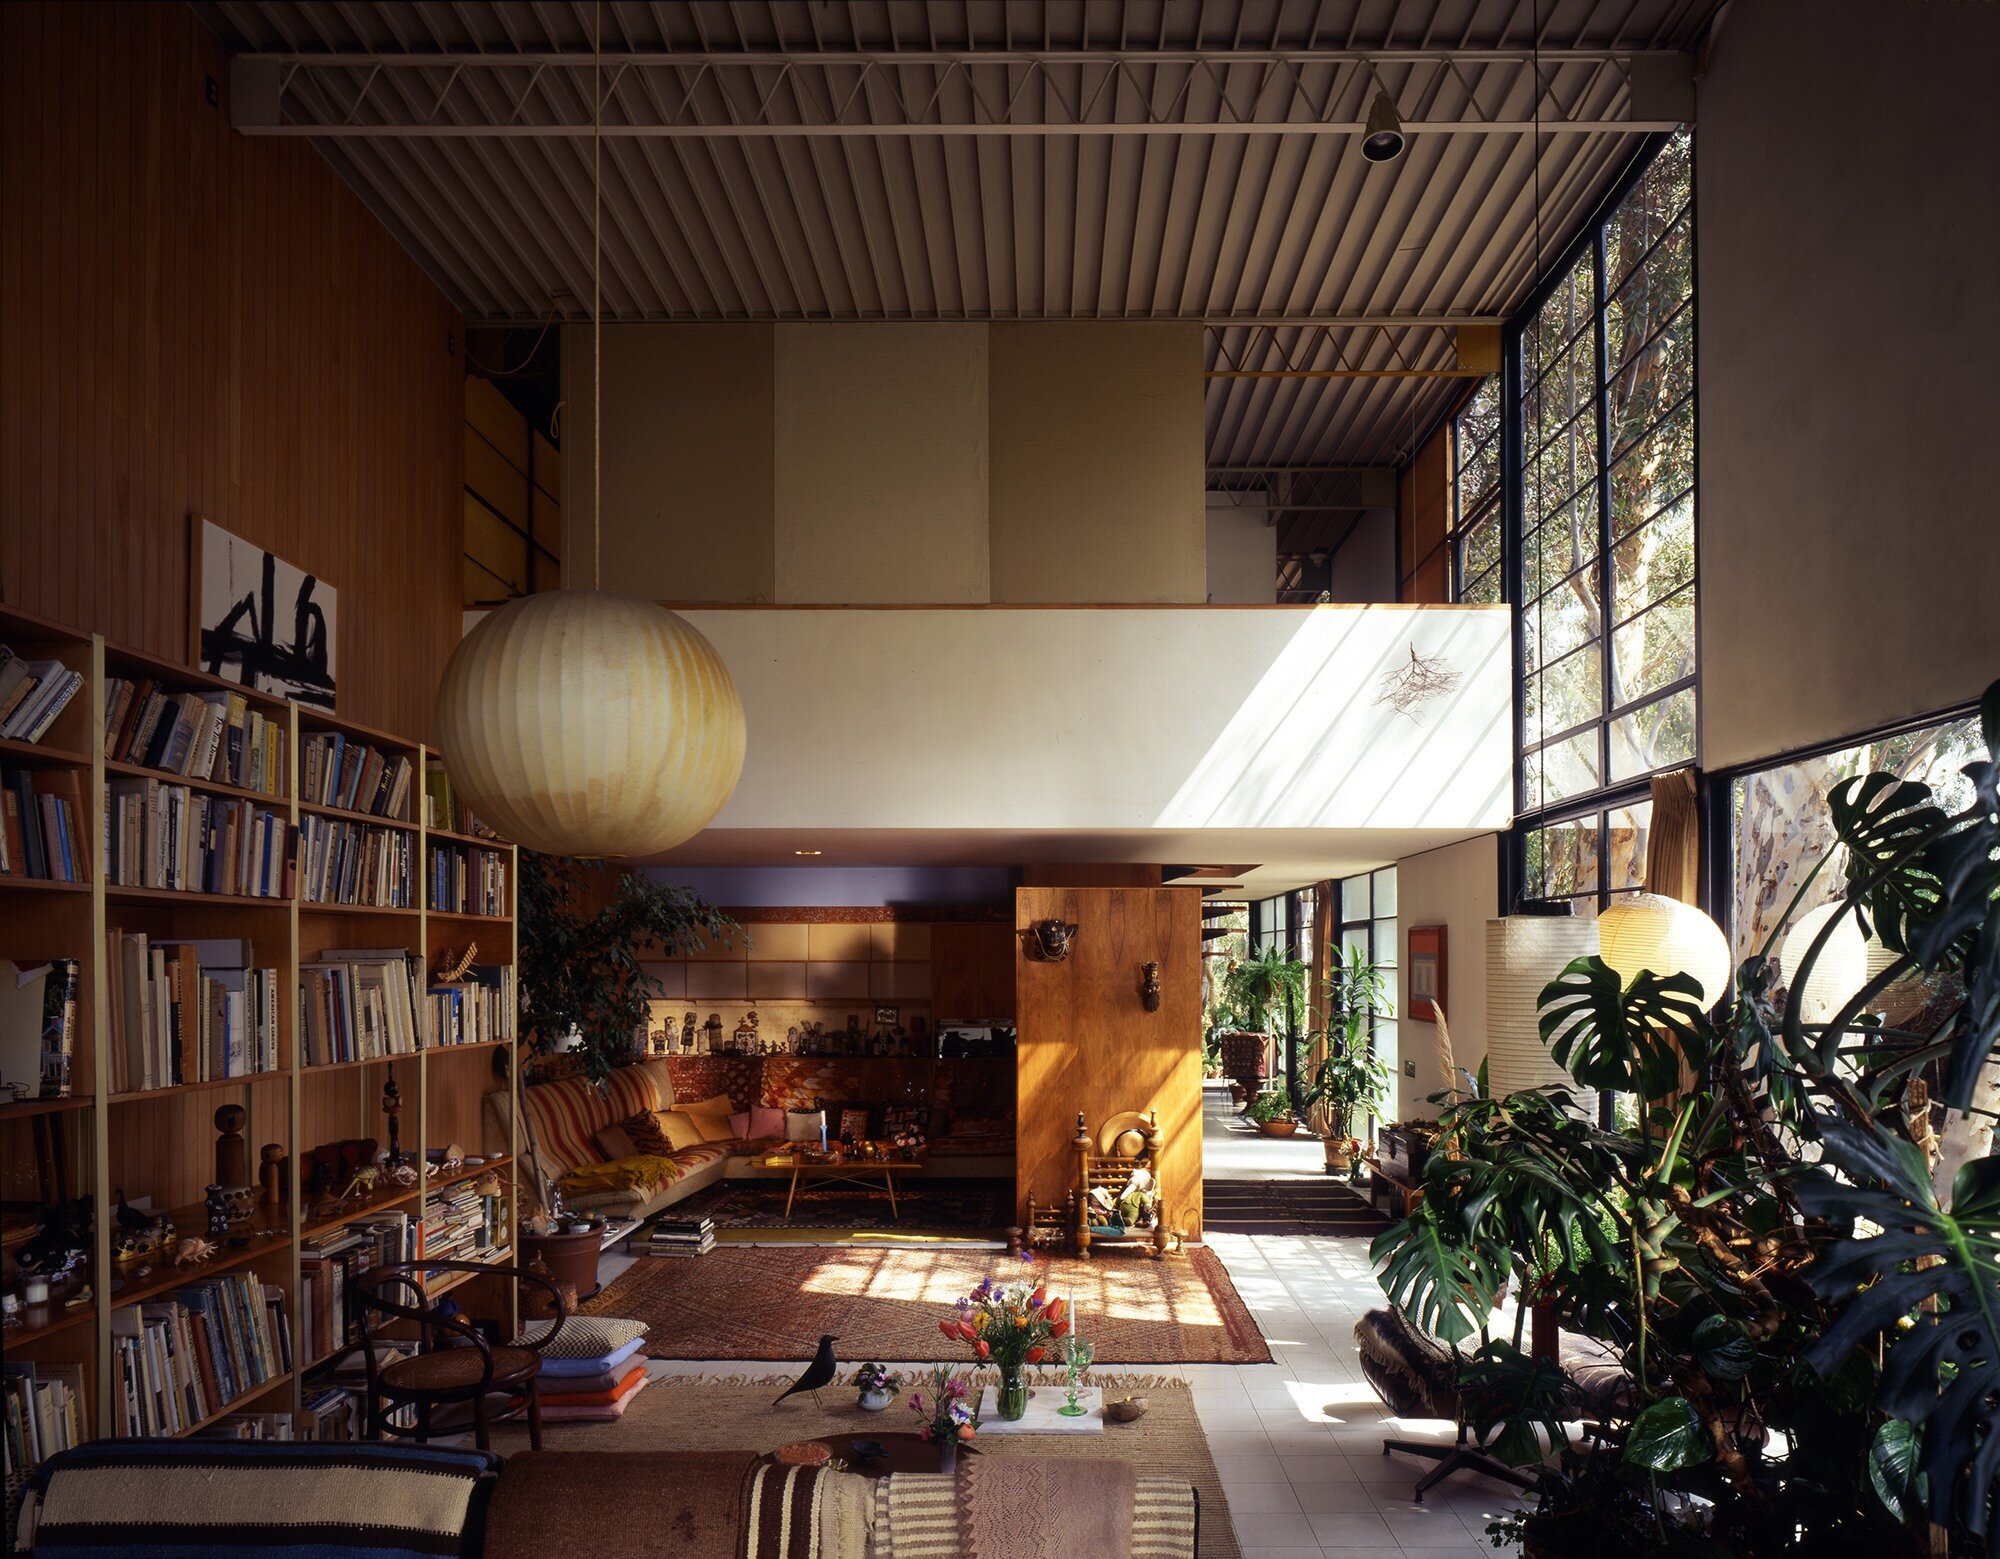  Eames House living room. Source:  Enso  